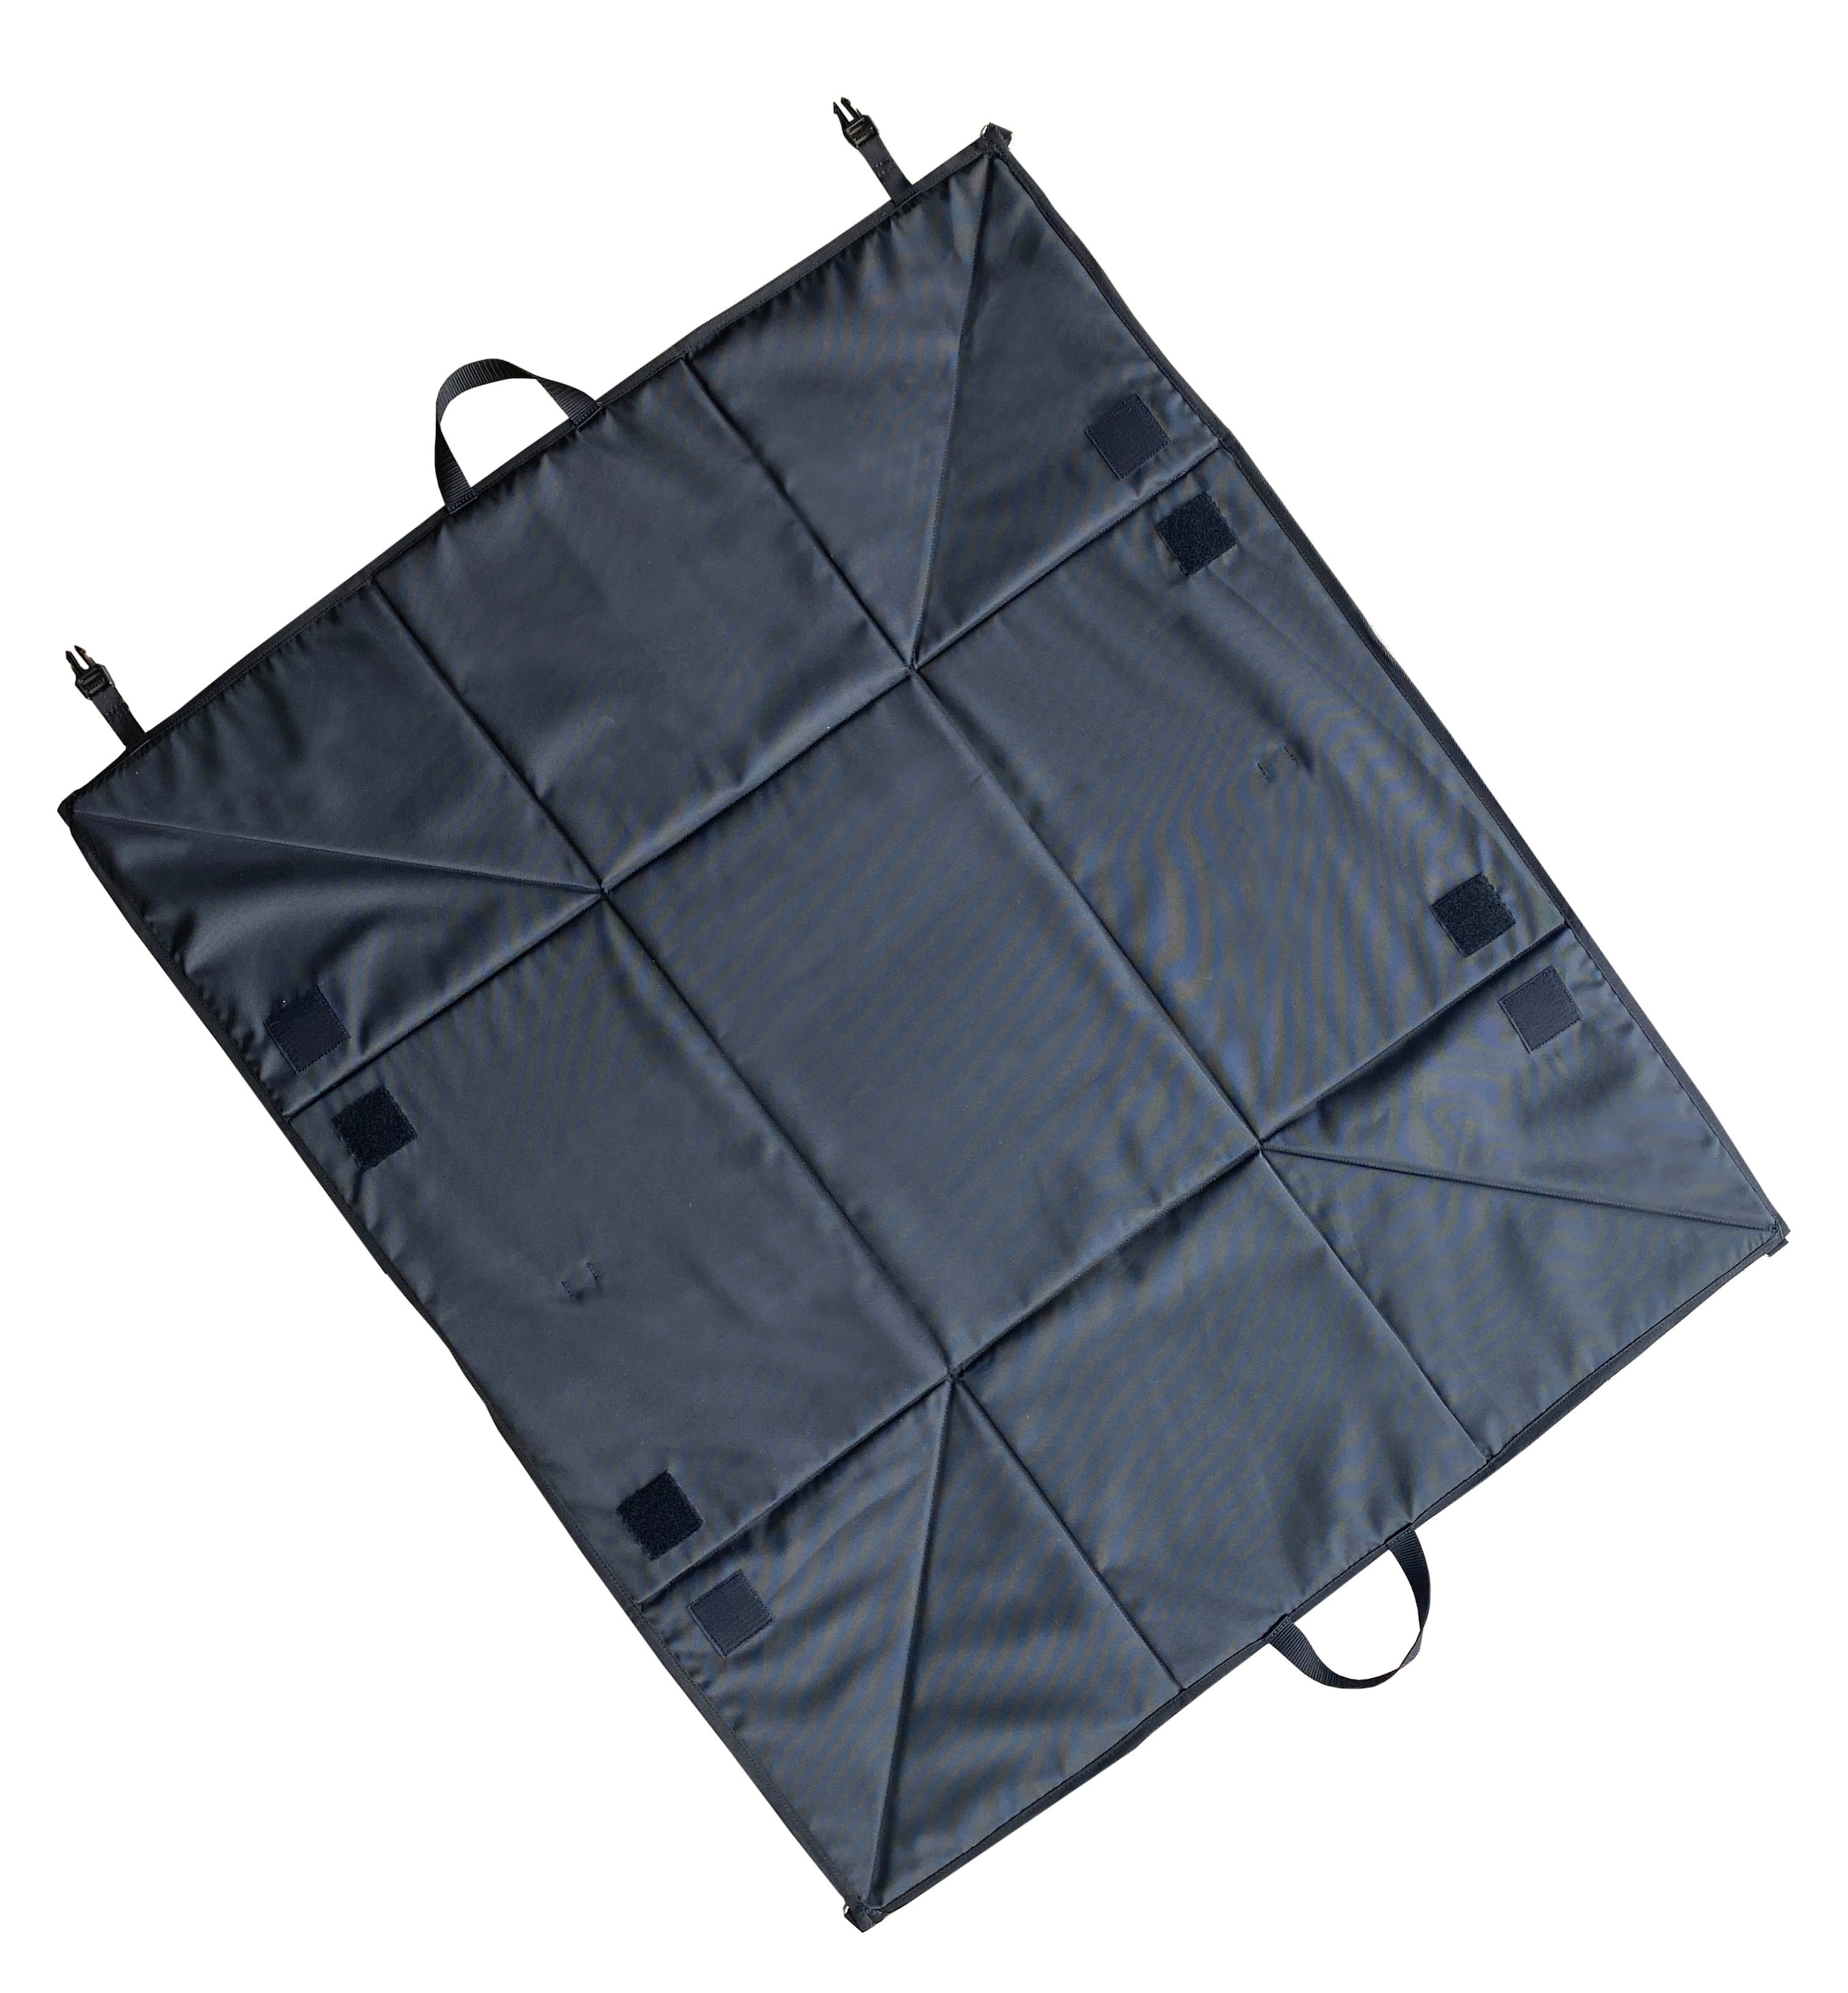 Bag to Life Aufbewahrungstasche »ADAC Kofferraum-Box«, im praktischen Design